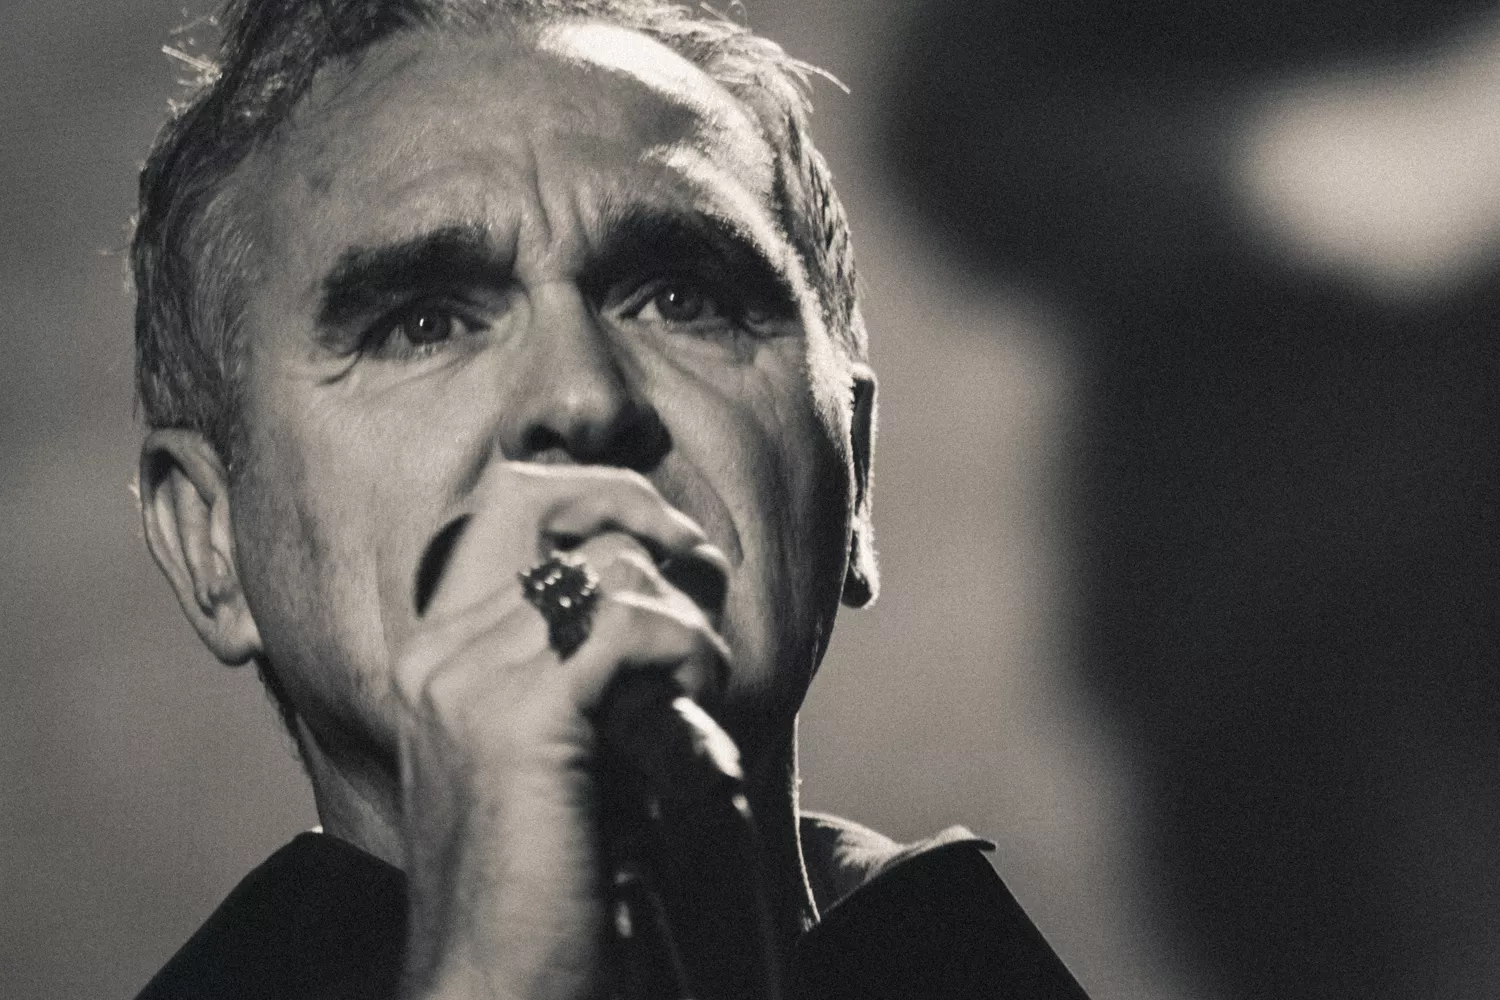 Morrissey udtaler sig om terrorangrebet i Manchester – og kritiserer politikere